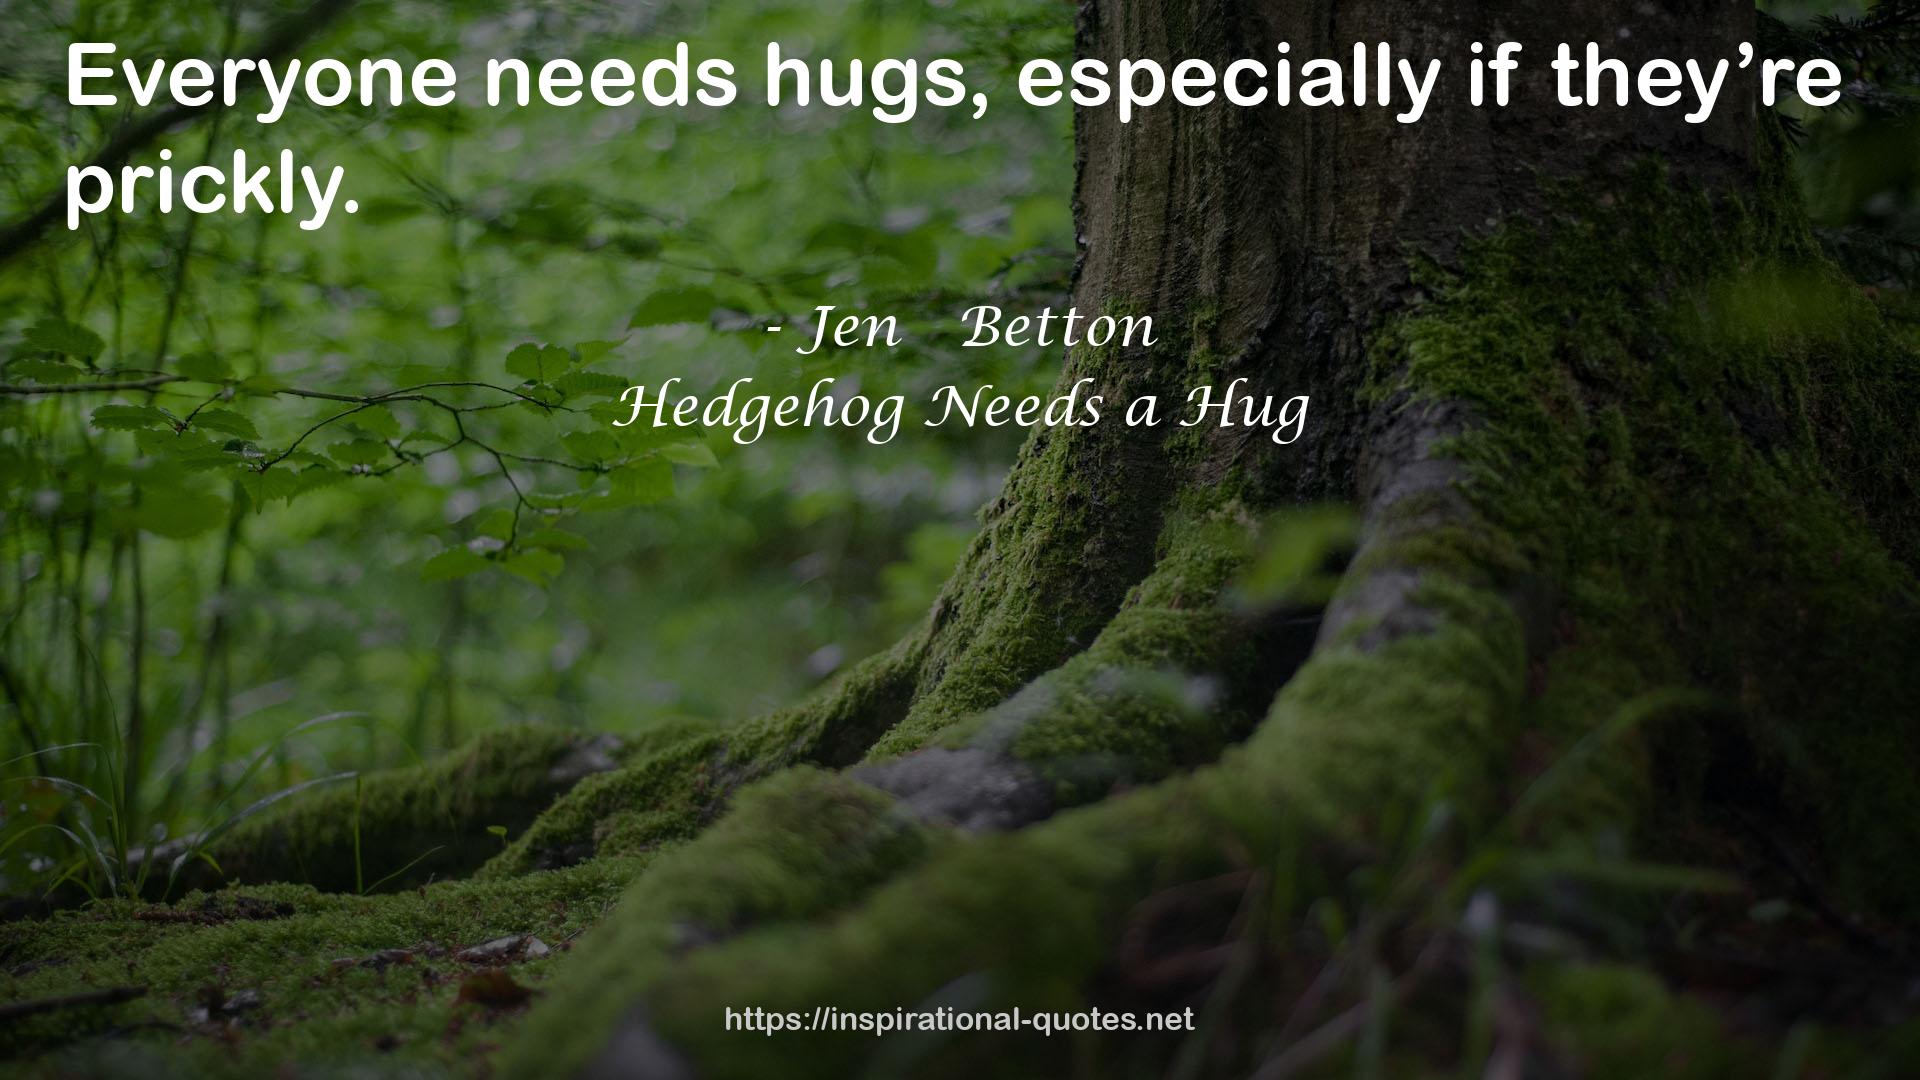 Hedgehog Needs a Hug QUOTES